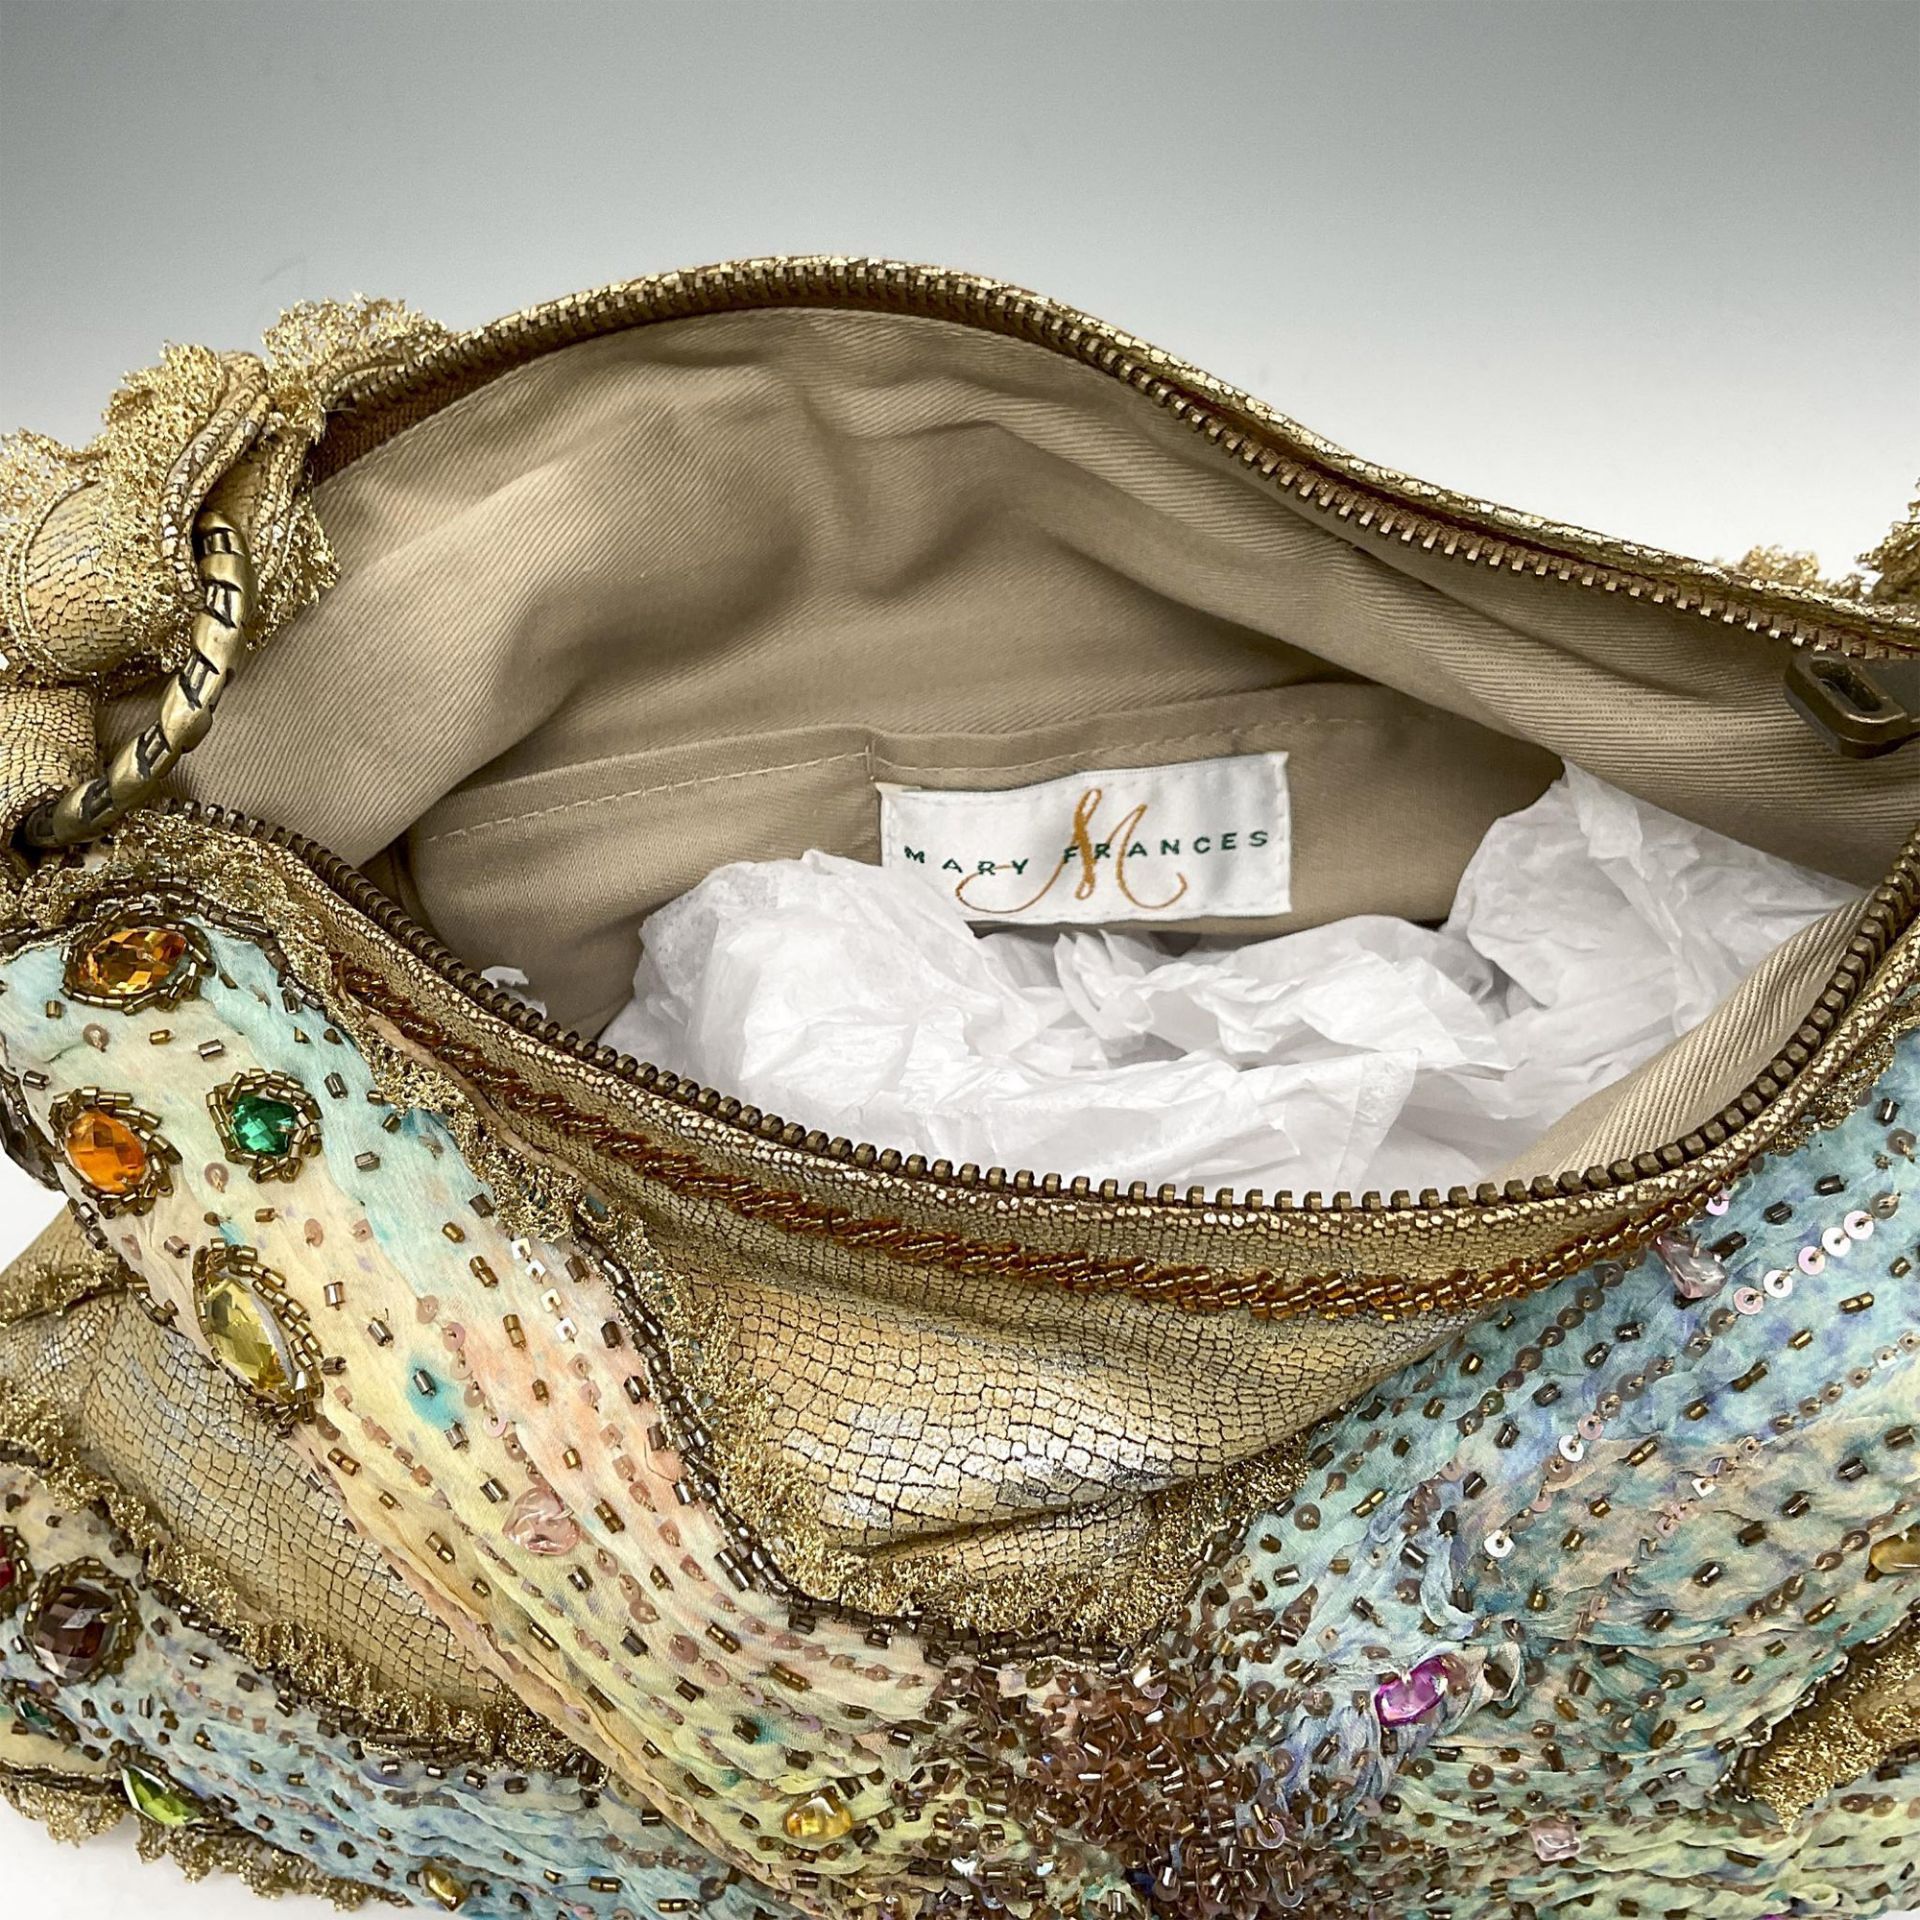 Mary Frances Beaded Cloth Handbag - Image 3 of 4